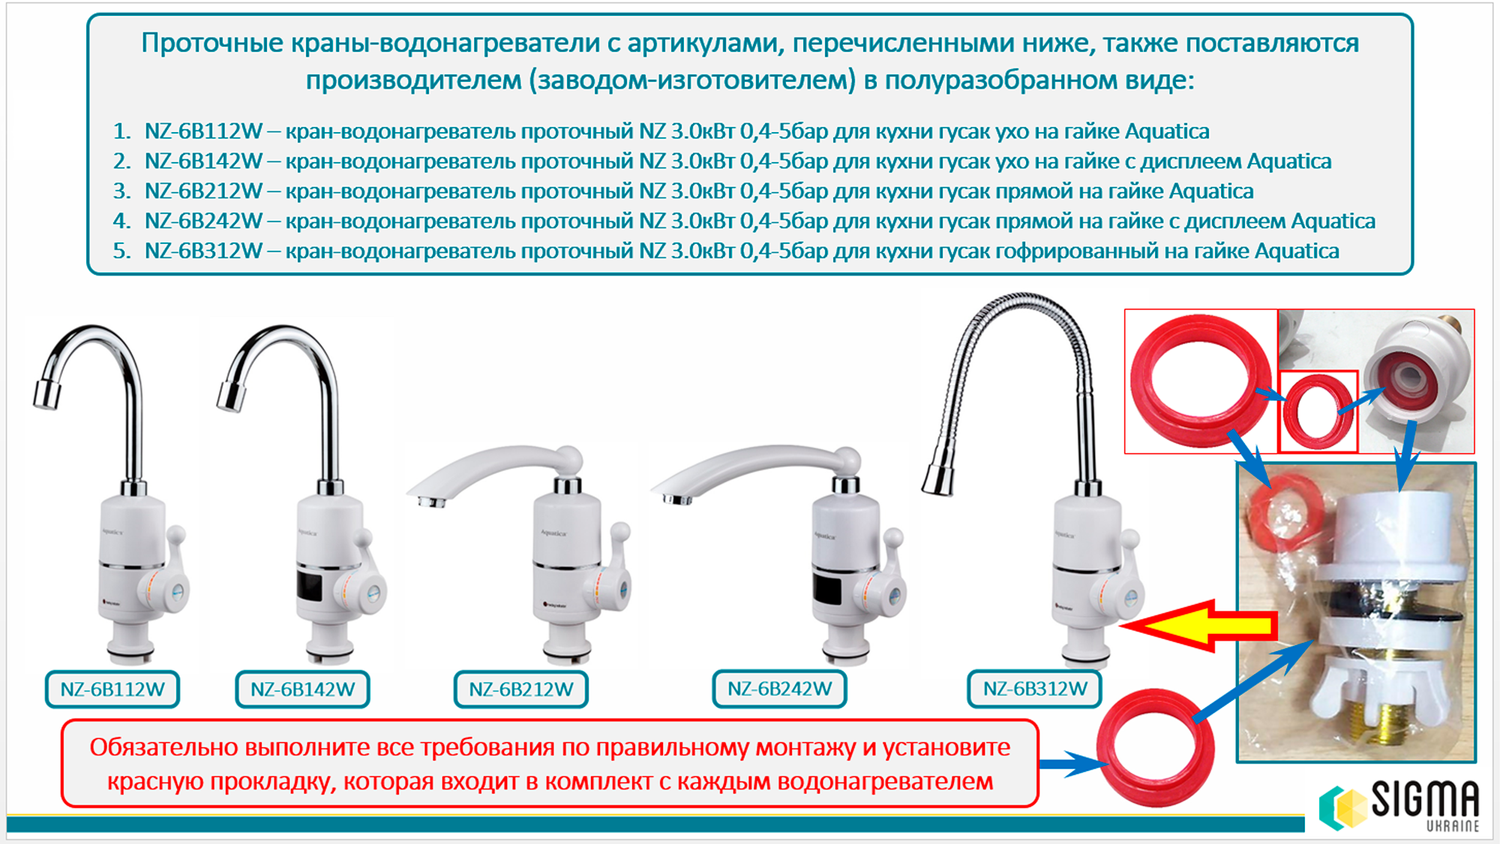 Кран-водонагрівач проточний S97 3.0Квт для кухні Aquatica, гусак вухо на гайці, з дисплеєм Nz-6B142W